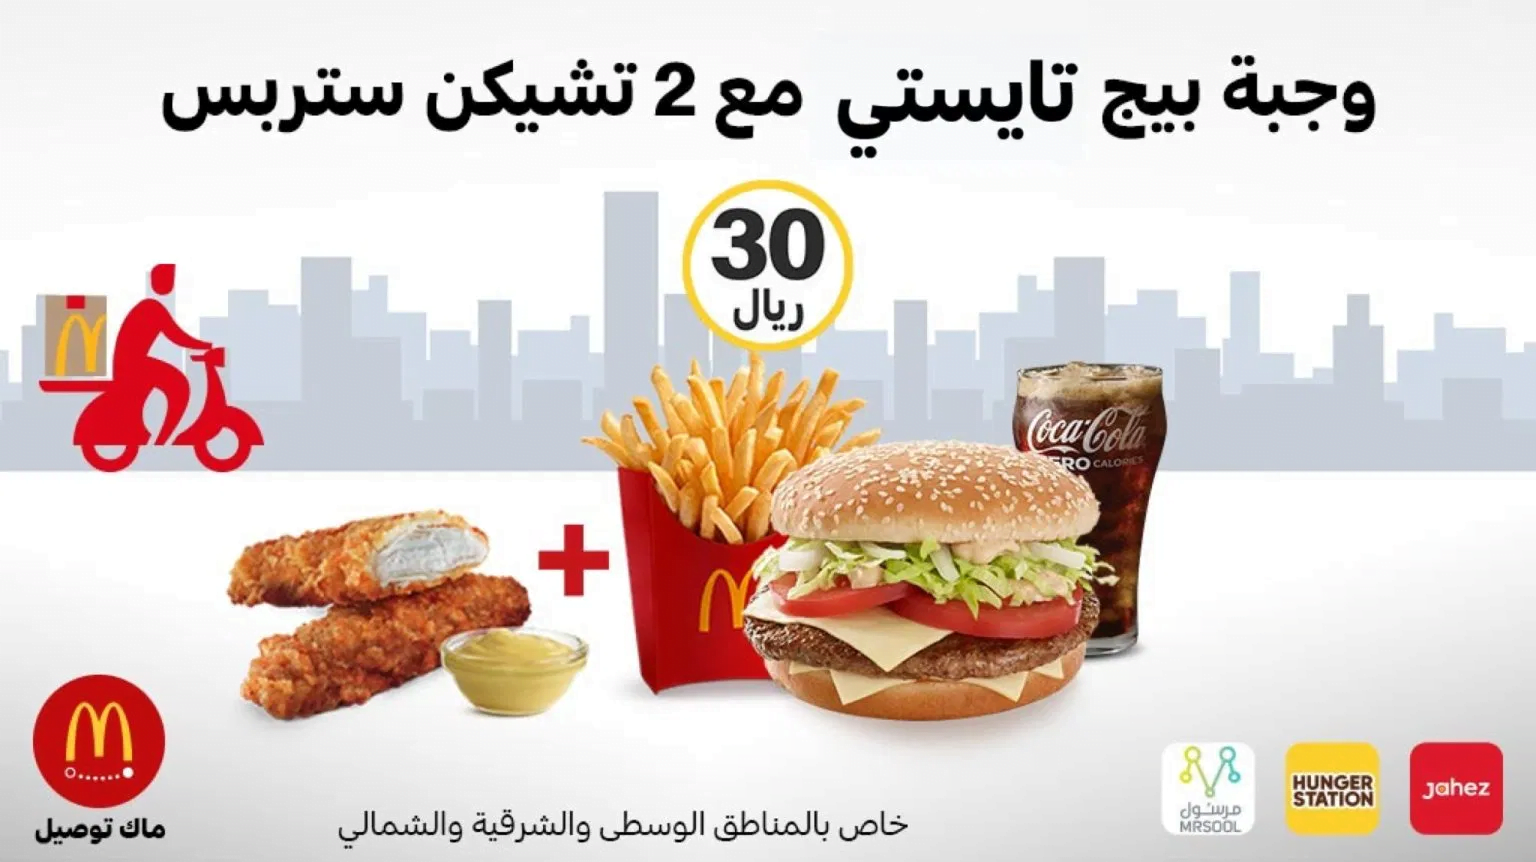 clipboard 4 - عروض رمضان : عروض مطاعم السعودية لوجبات الافطار لشهر رمضان 2020 - 1441 محدثة يومياً